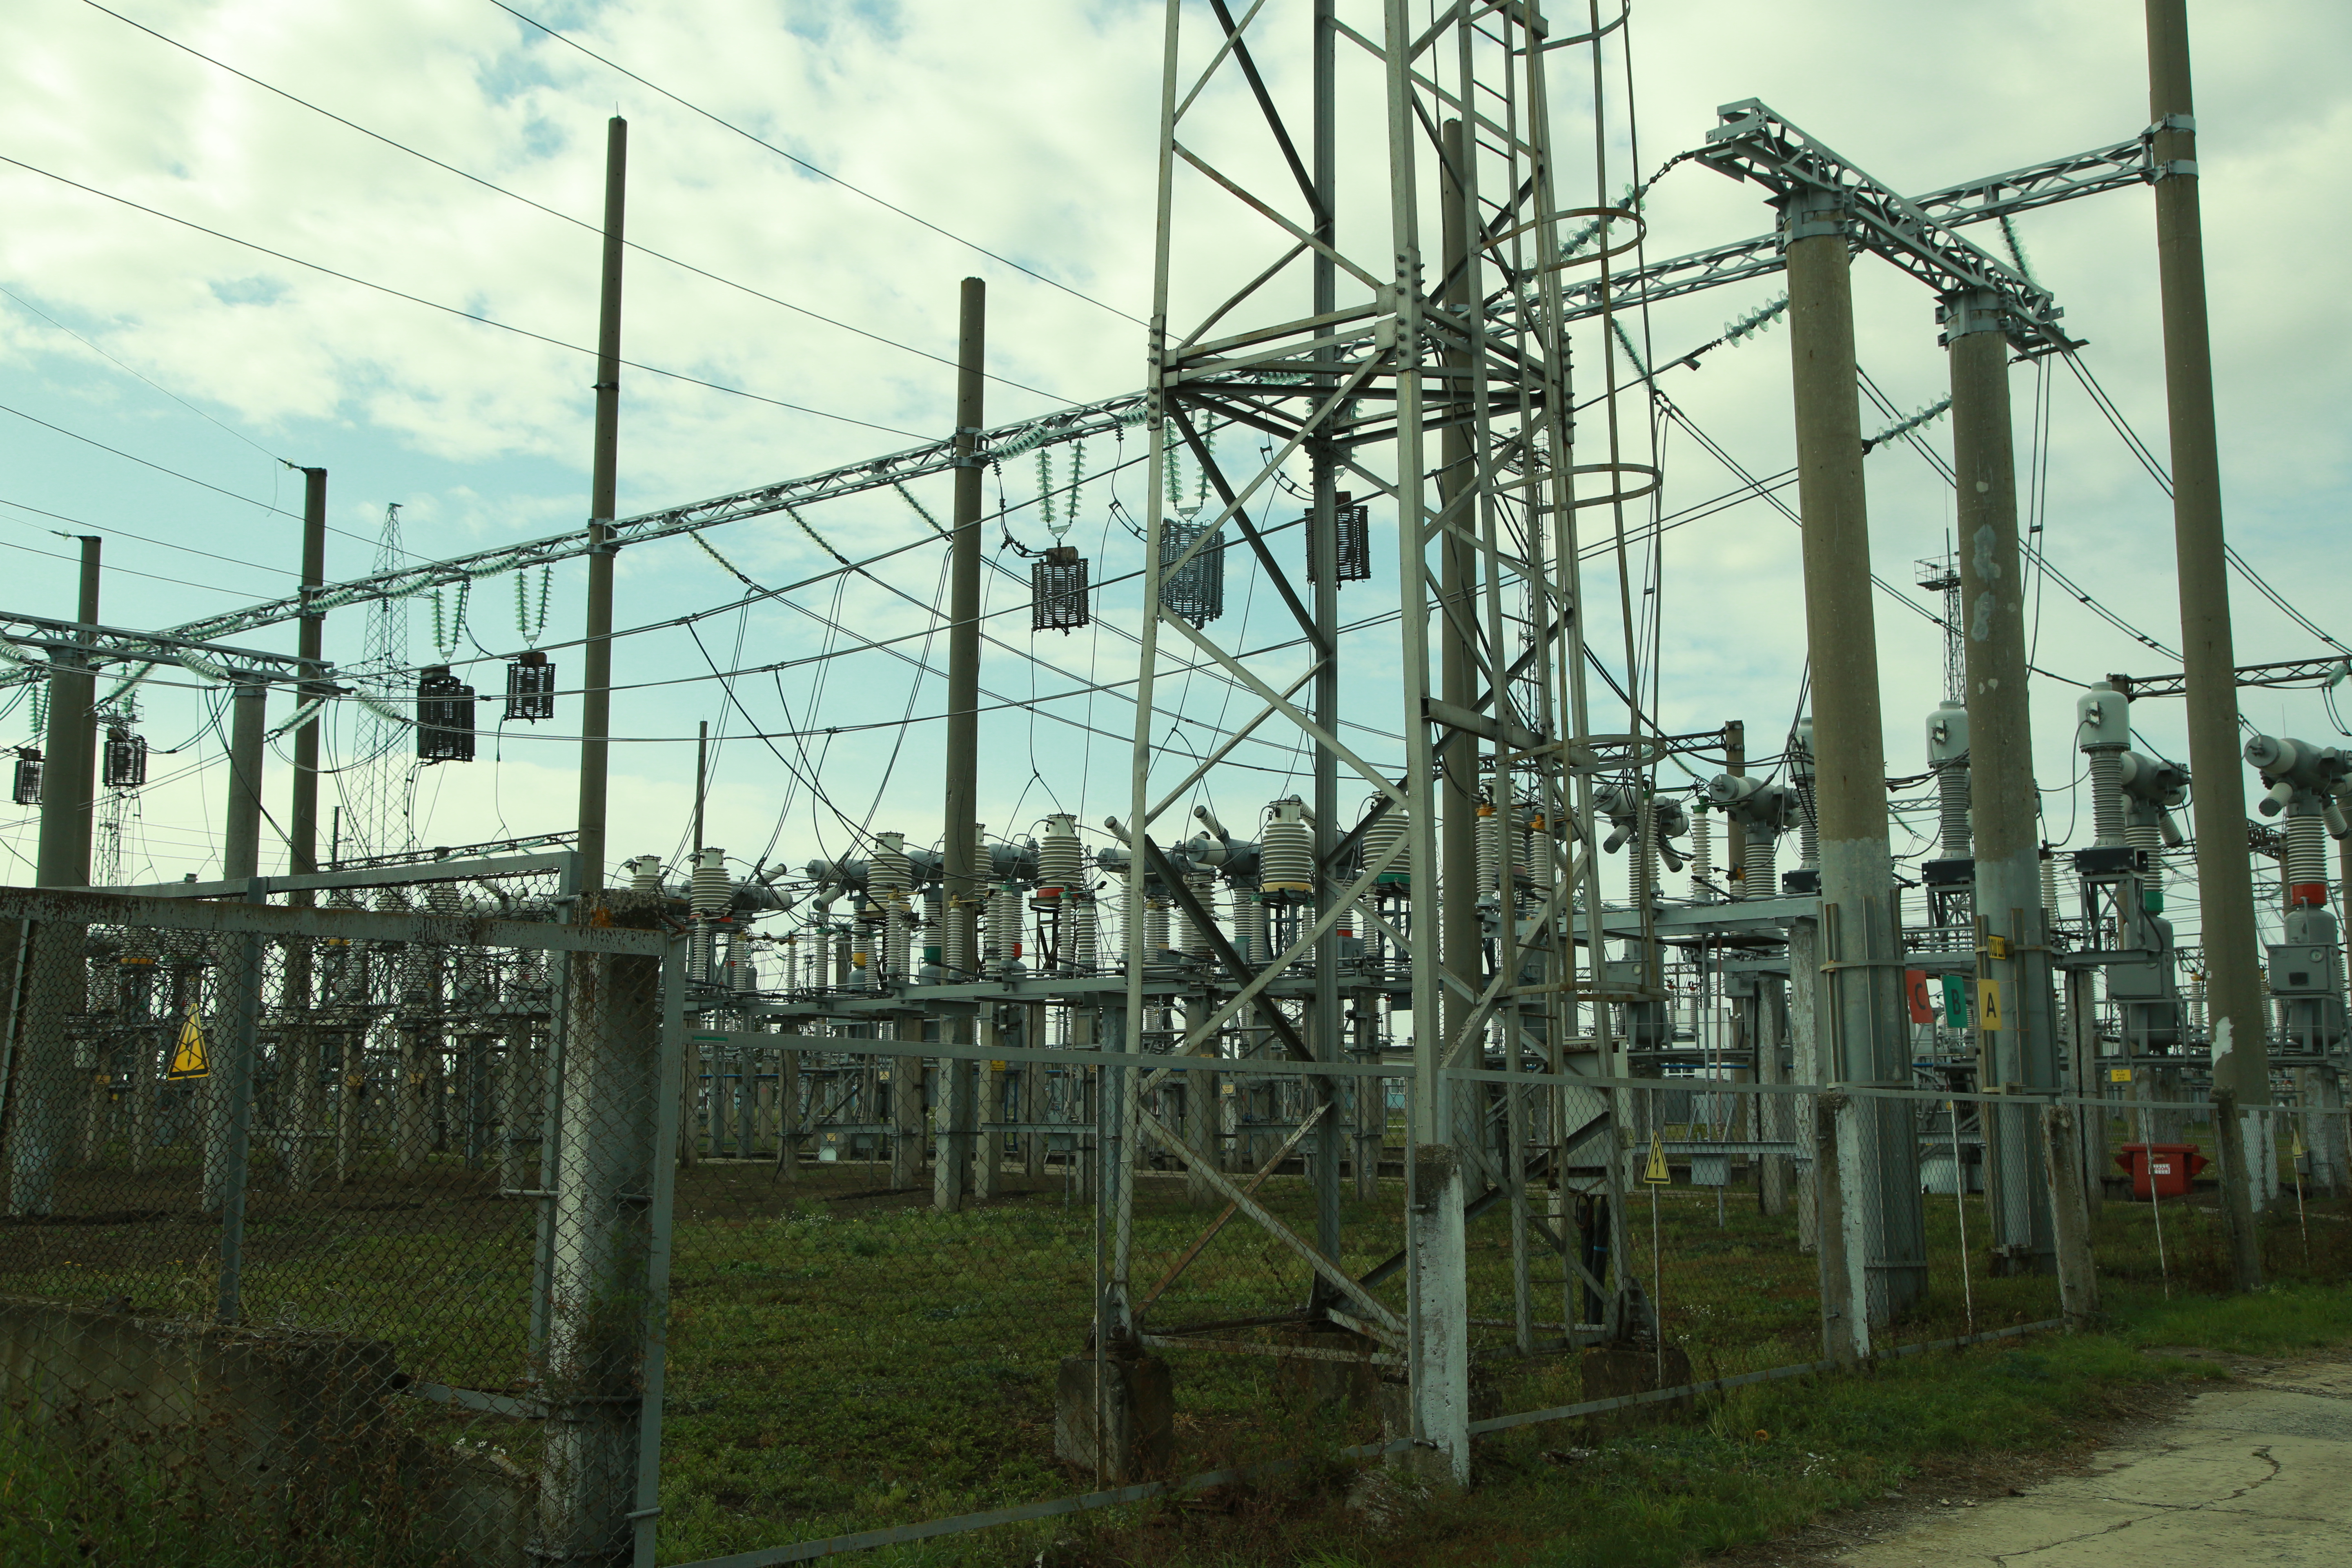 
		
		Известен график отключений электричества в Пензенской области с 6 по 26 декабря
		
	